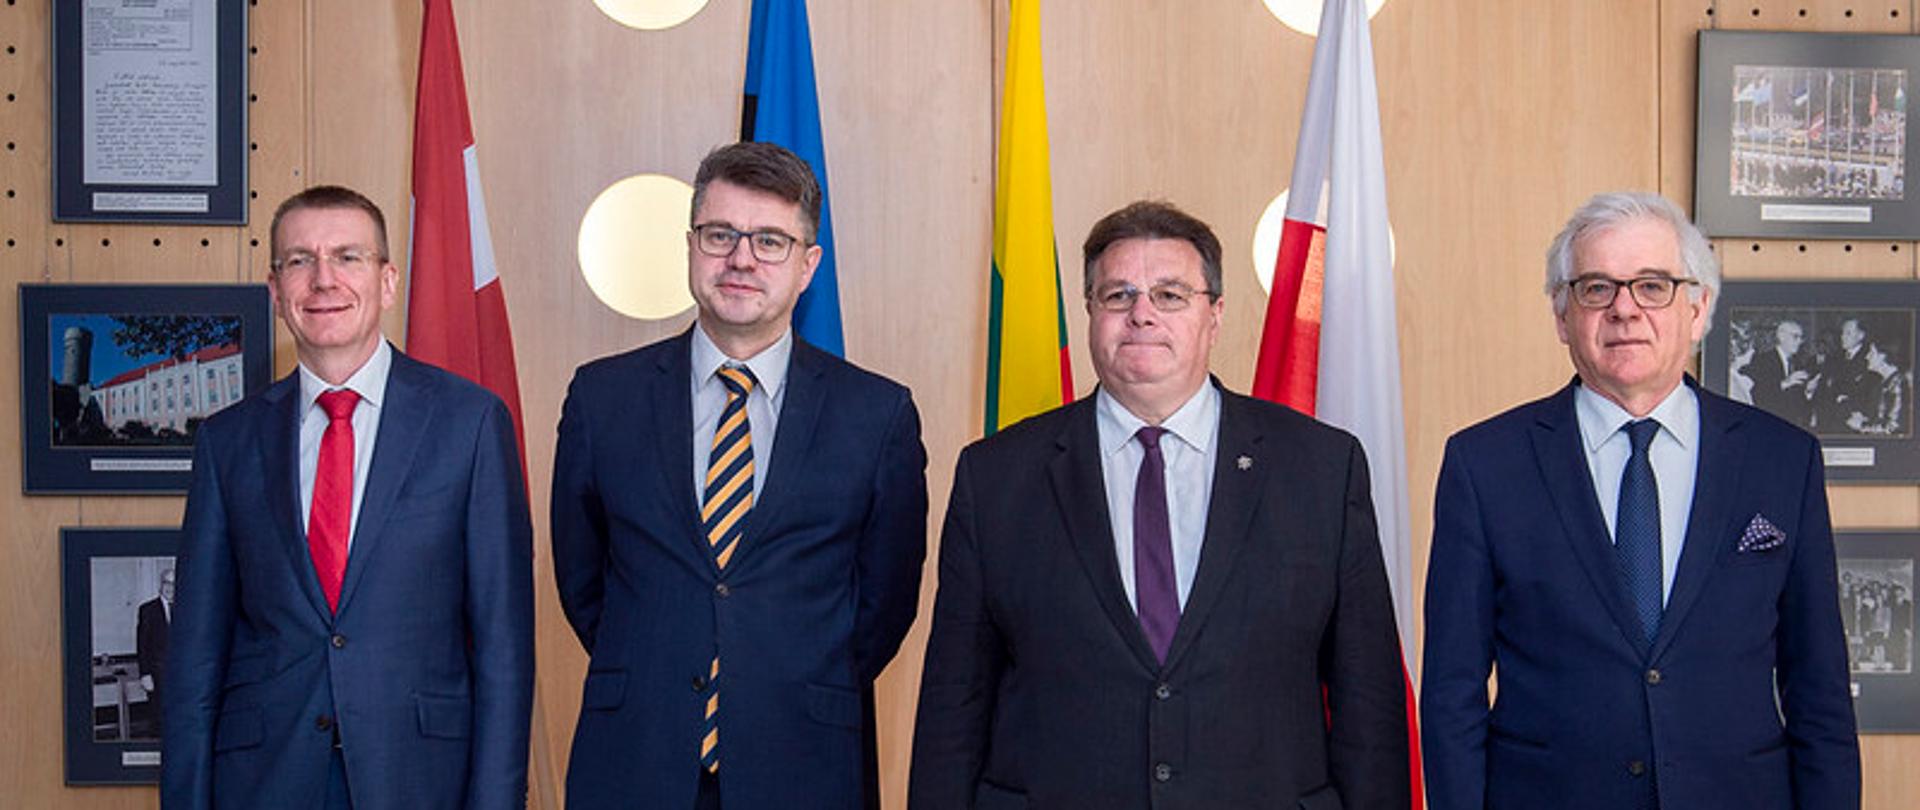 Ministrowie sz Polski, Litwy, Łotwy i Estonii